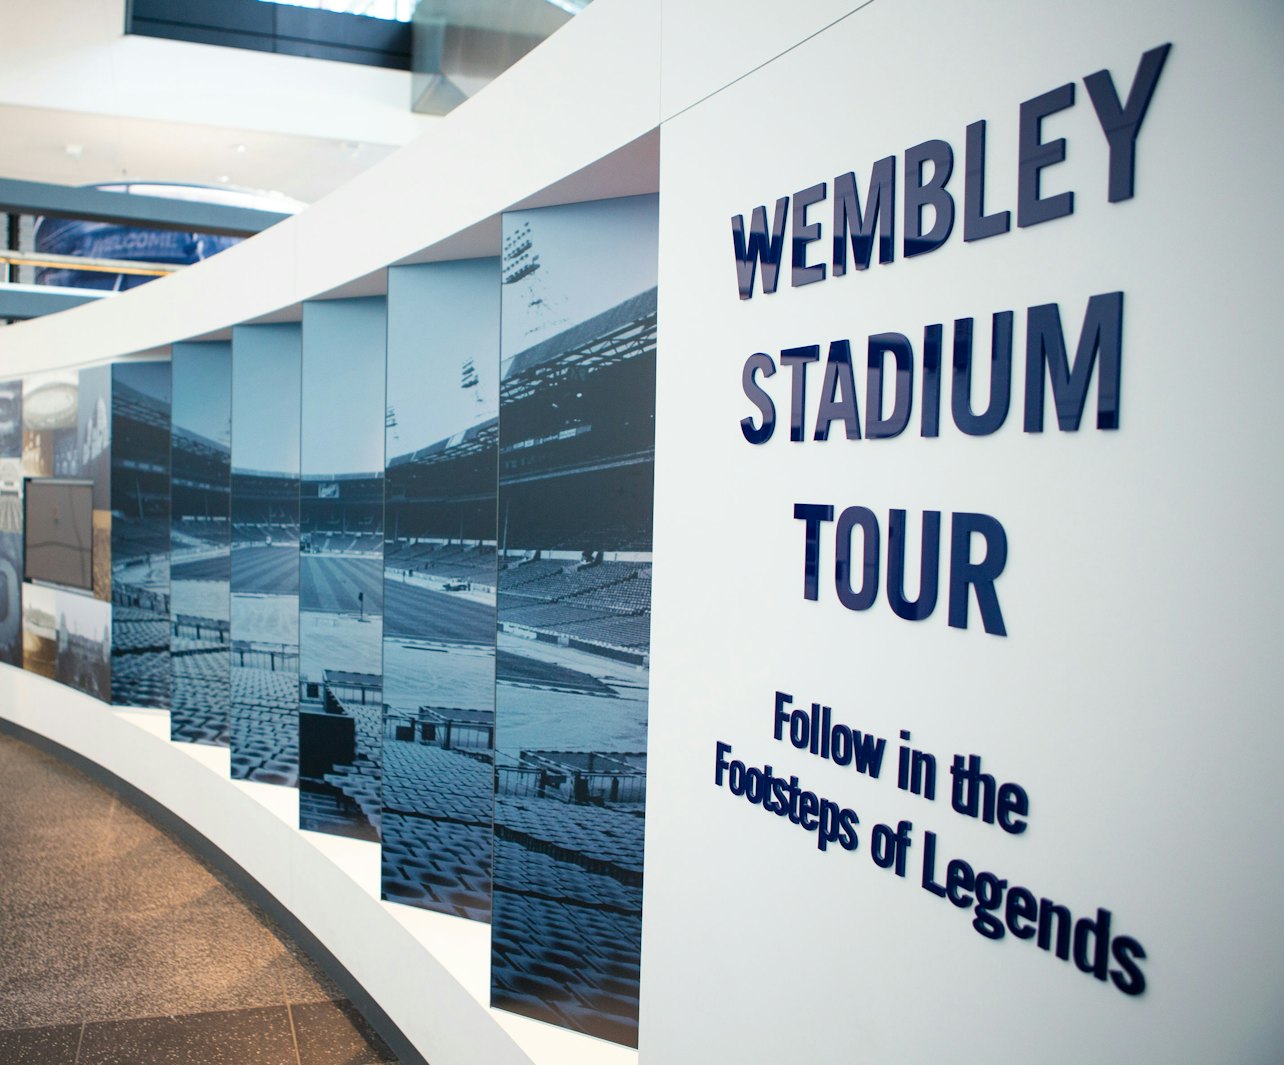 Tour do Estádio de Wembley - Acomodações em Londres